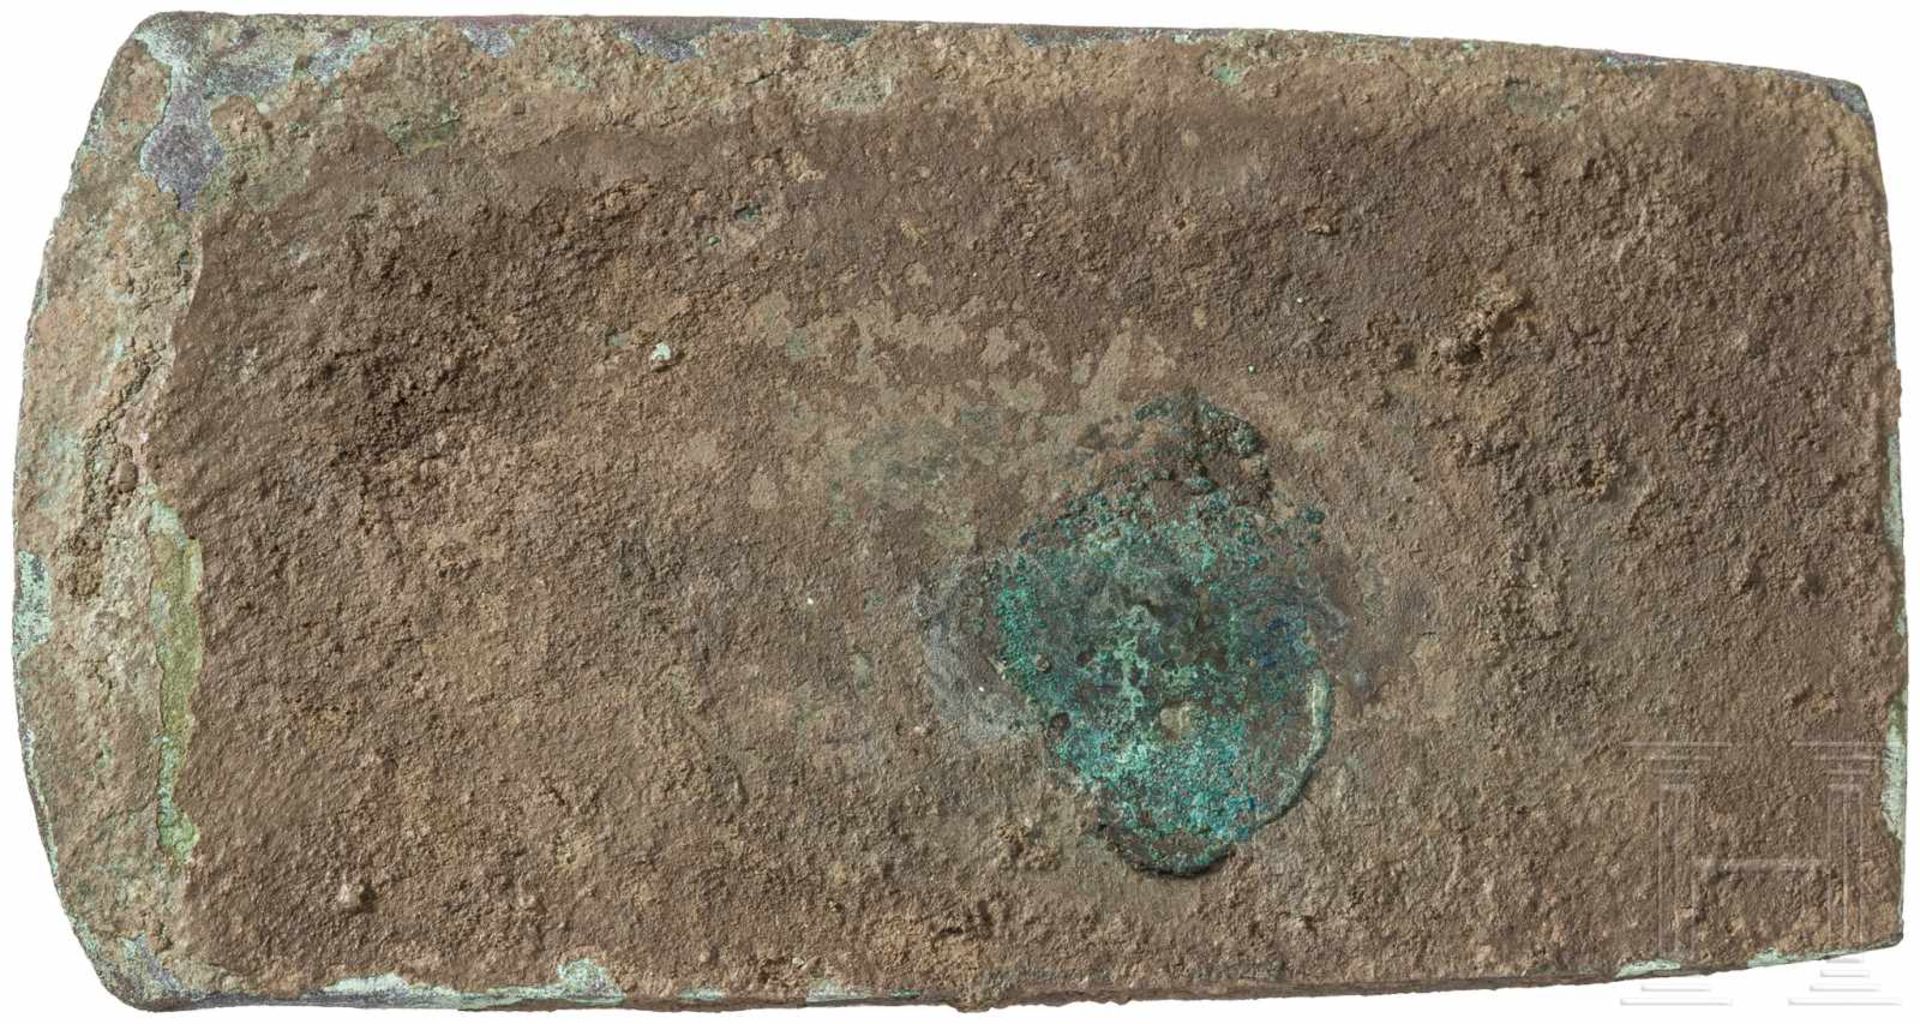 Rechteckflachbeil Typ Vinča, Endneolithikum-Frühkupferzeit, ca. 4000 v. Chr.Großes Kupferflachbeil